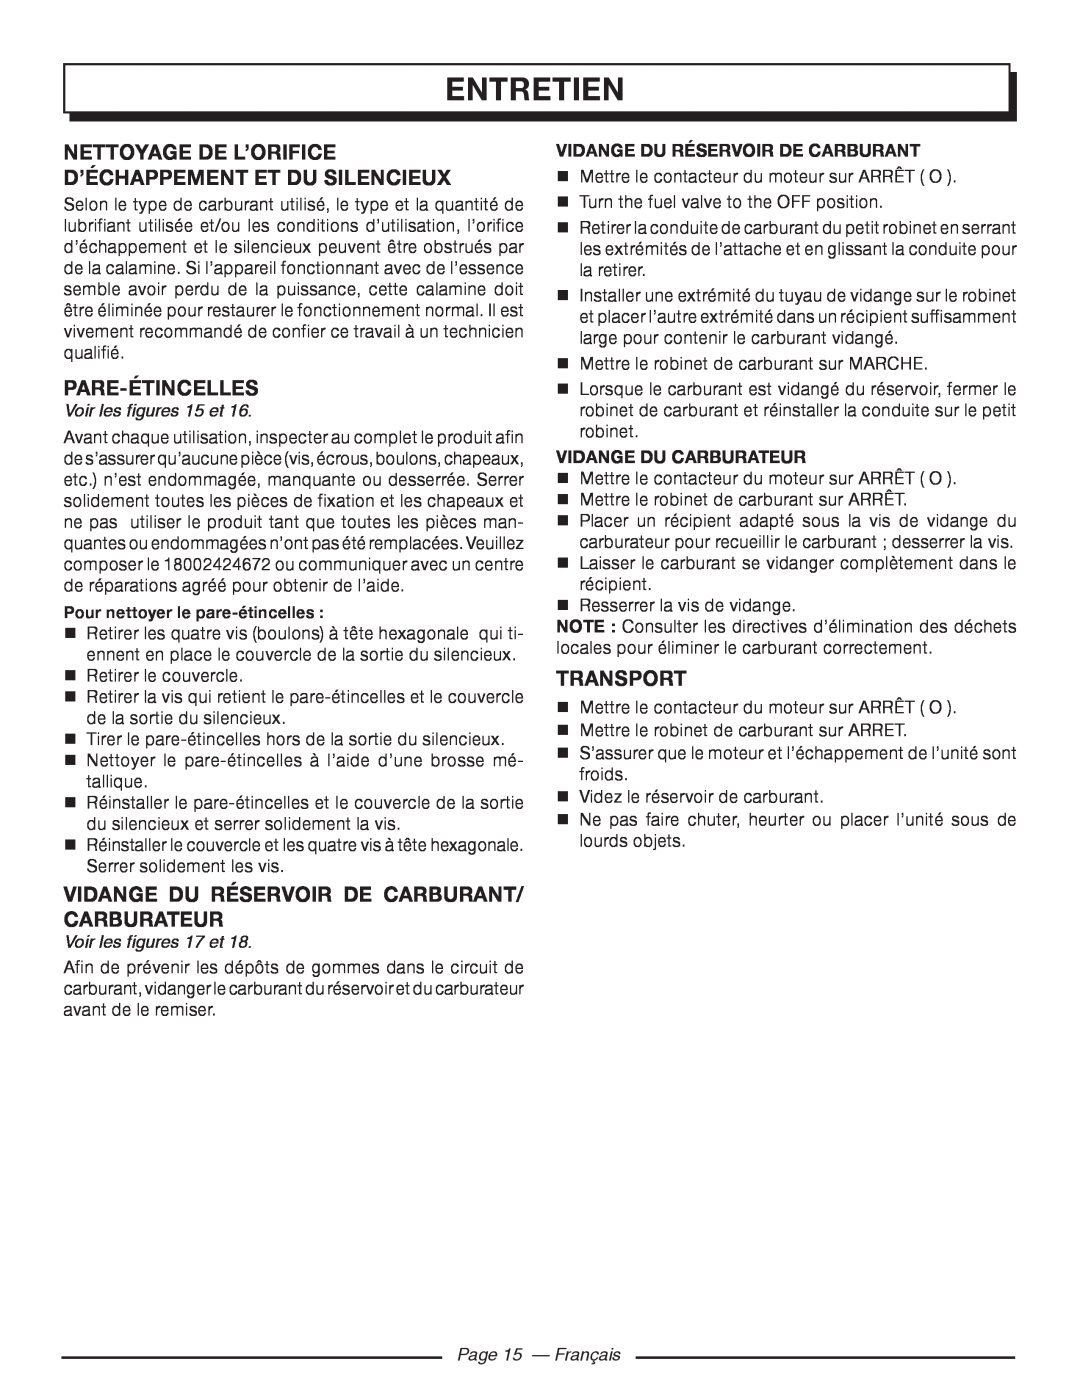 Homelite HGCA5000 Nettoyage De L’Orifice D’Échappement Et Du Silencieux, Pare-Étincelles, Transport, Page 15 - Français 